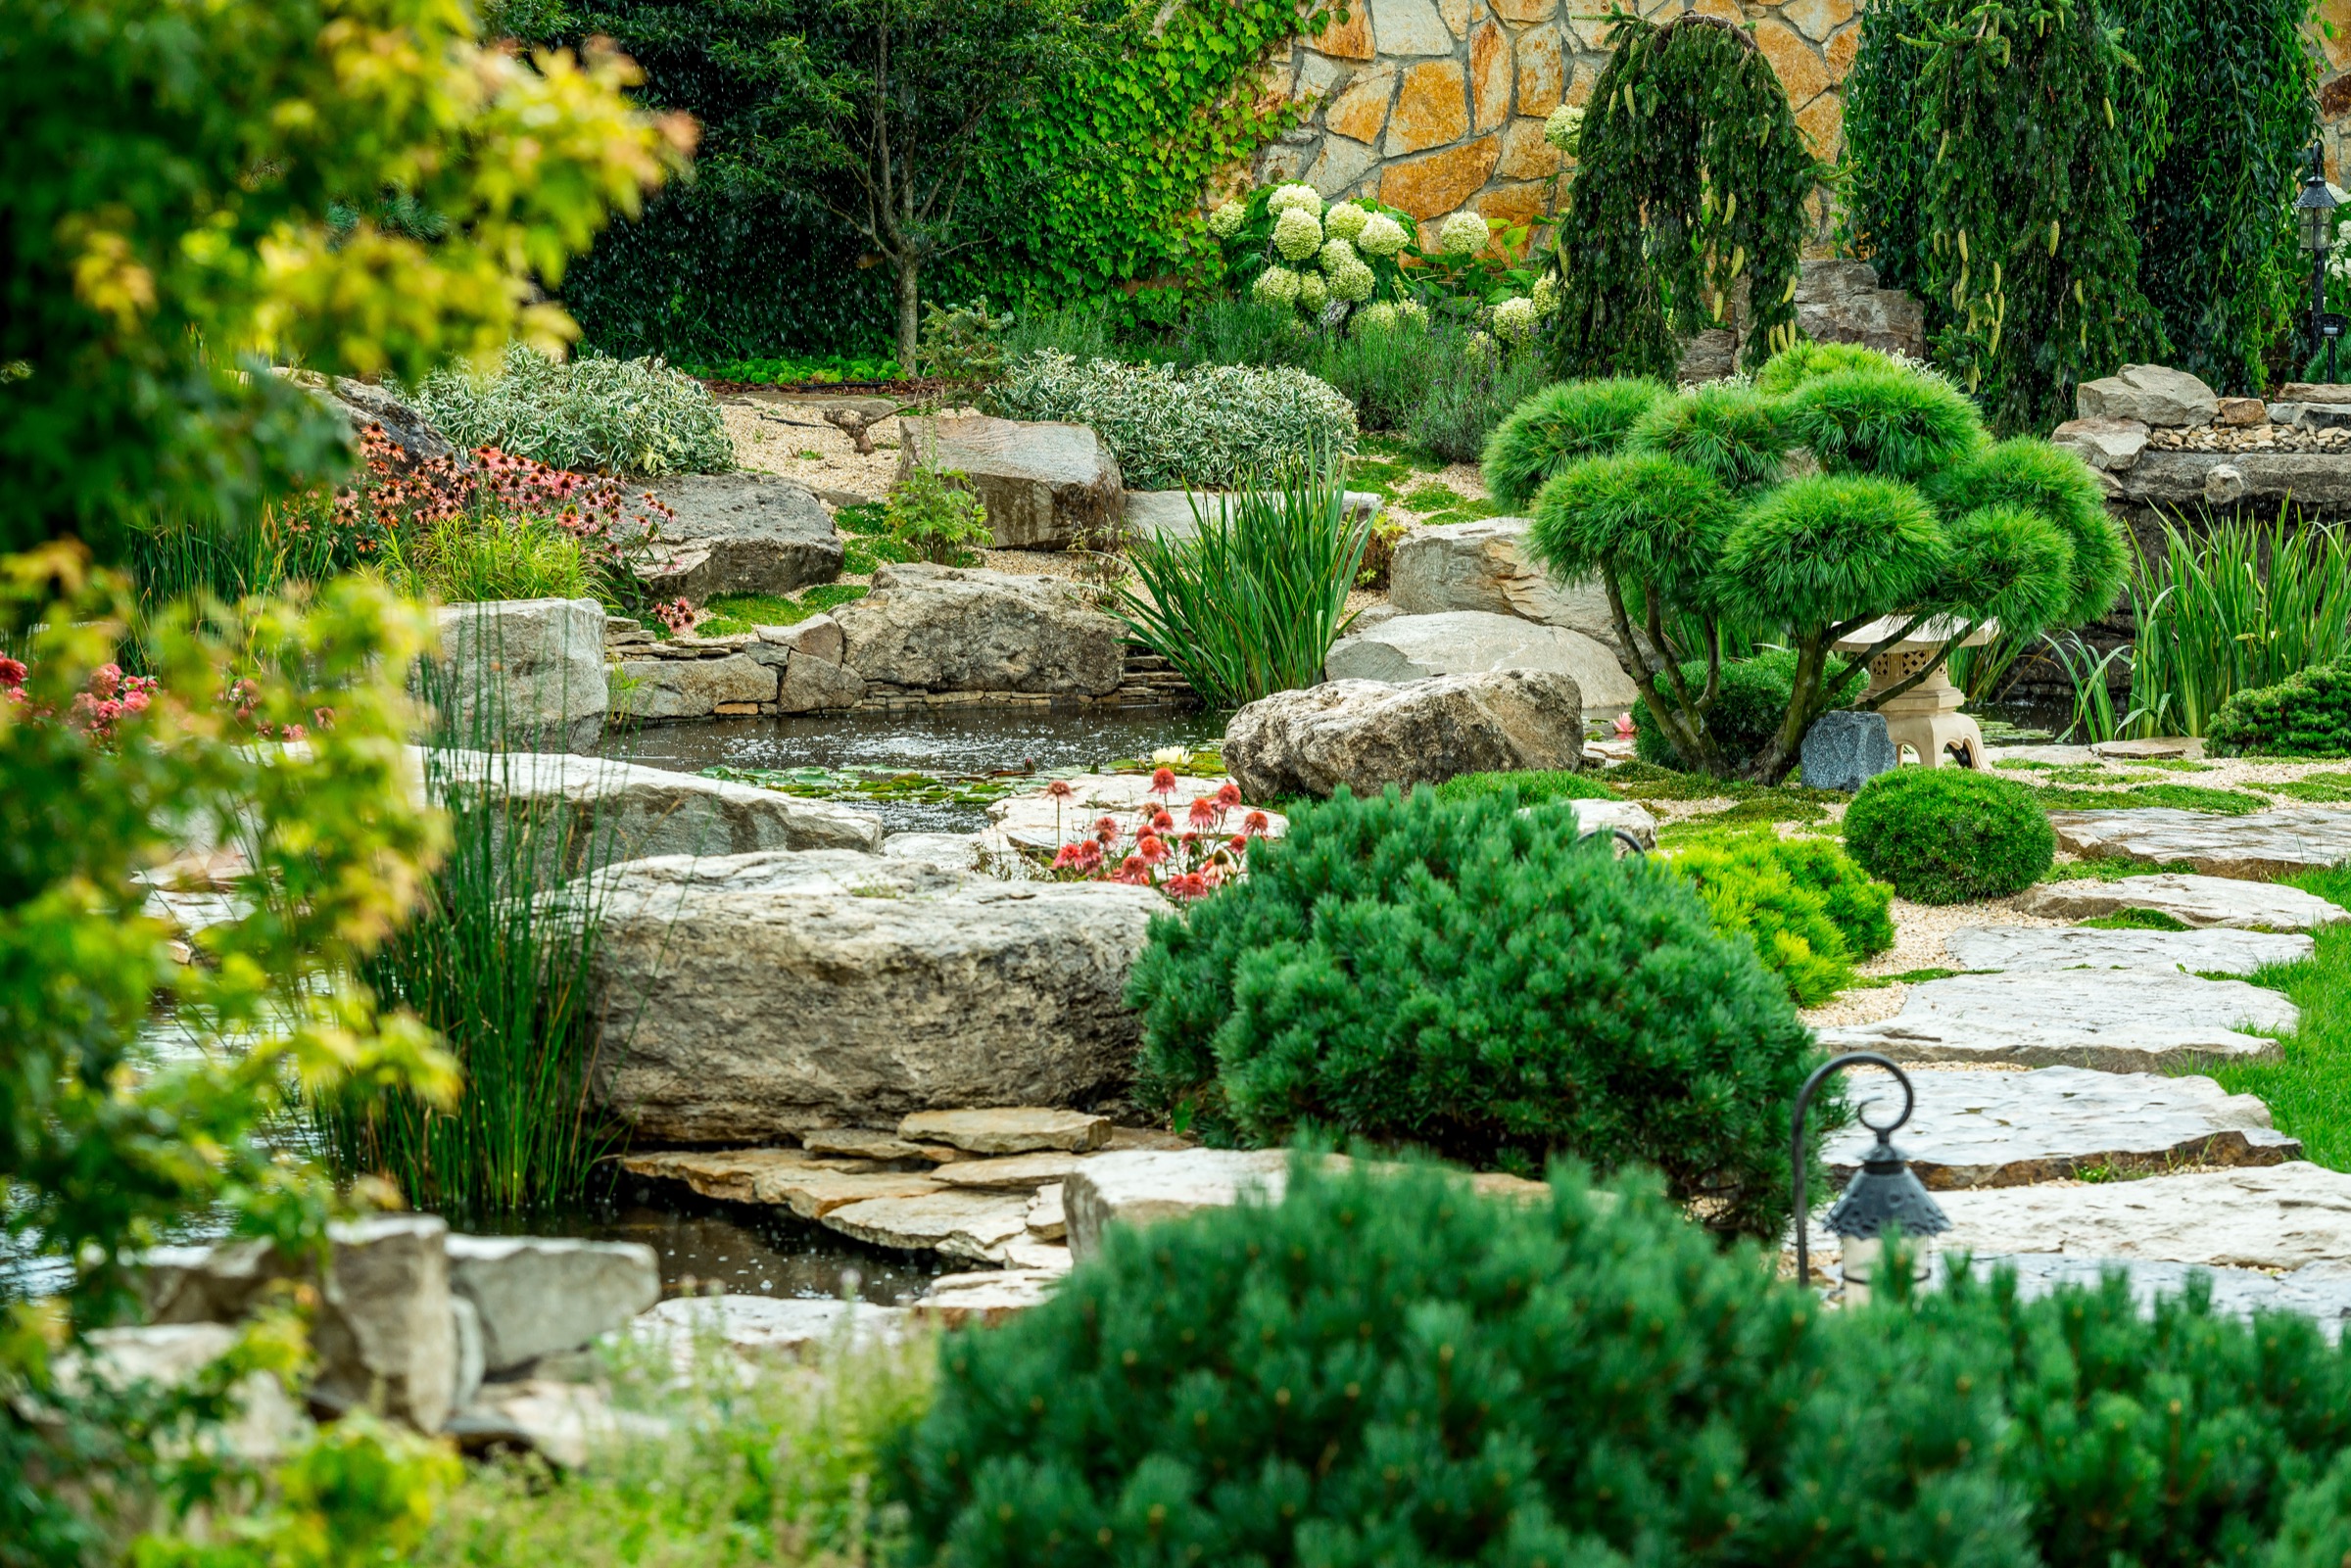 Ein Teilausschnitt eines Gartens mit kleinem Bachlauf durch Steine und verschiedene Grünpflanzen.